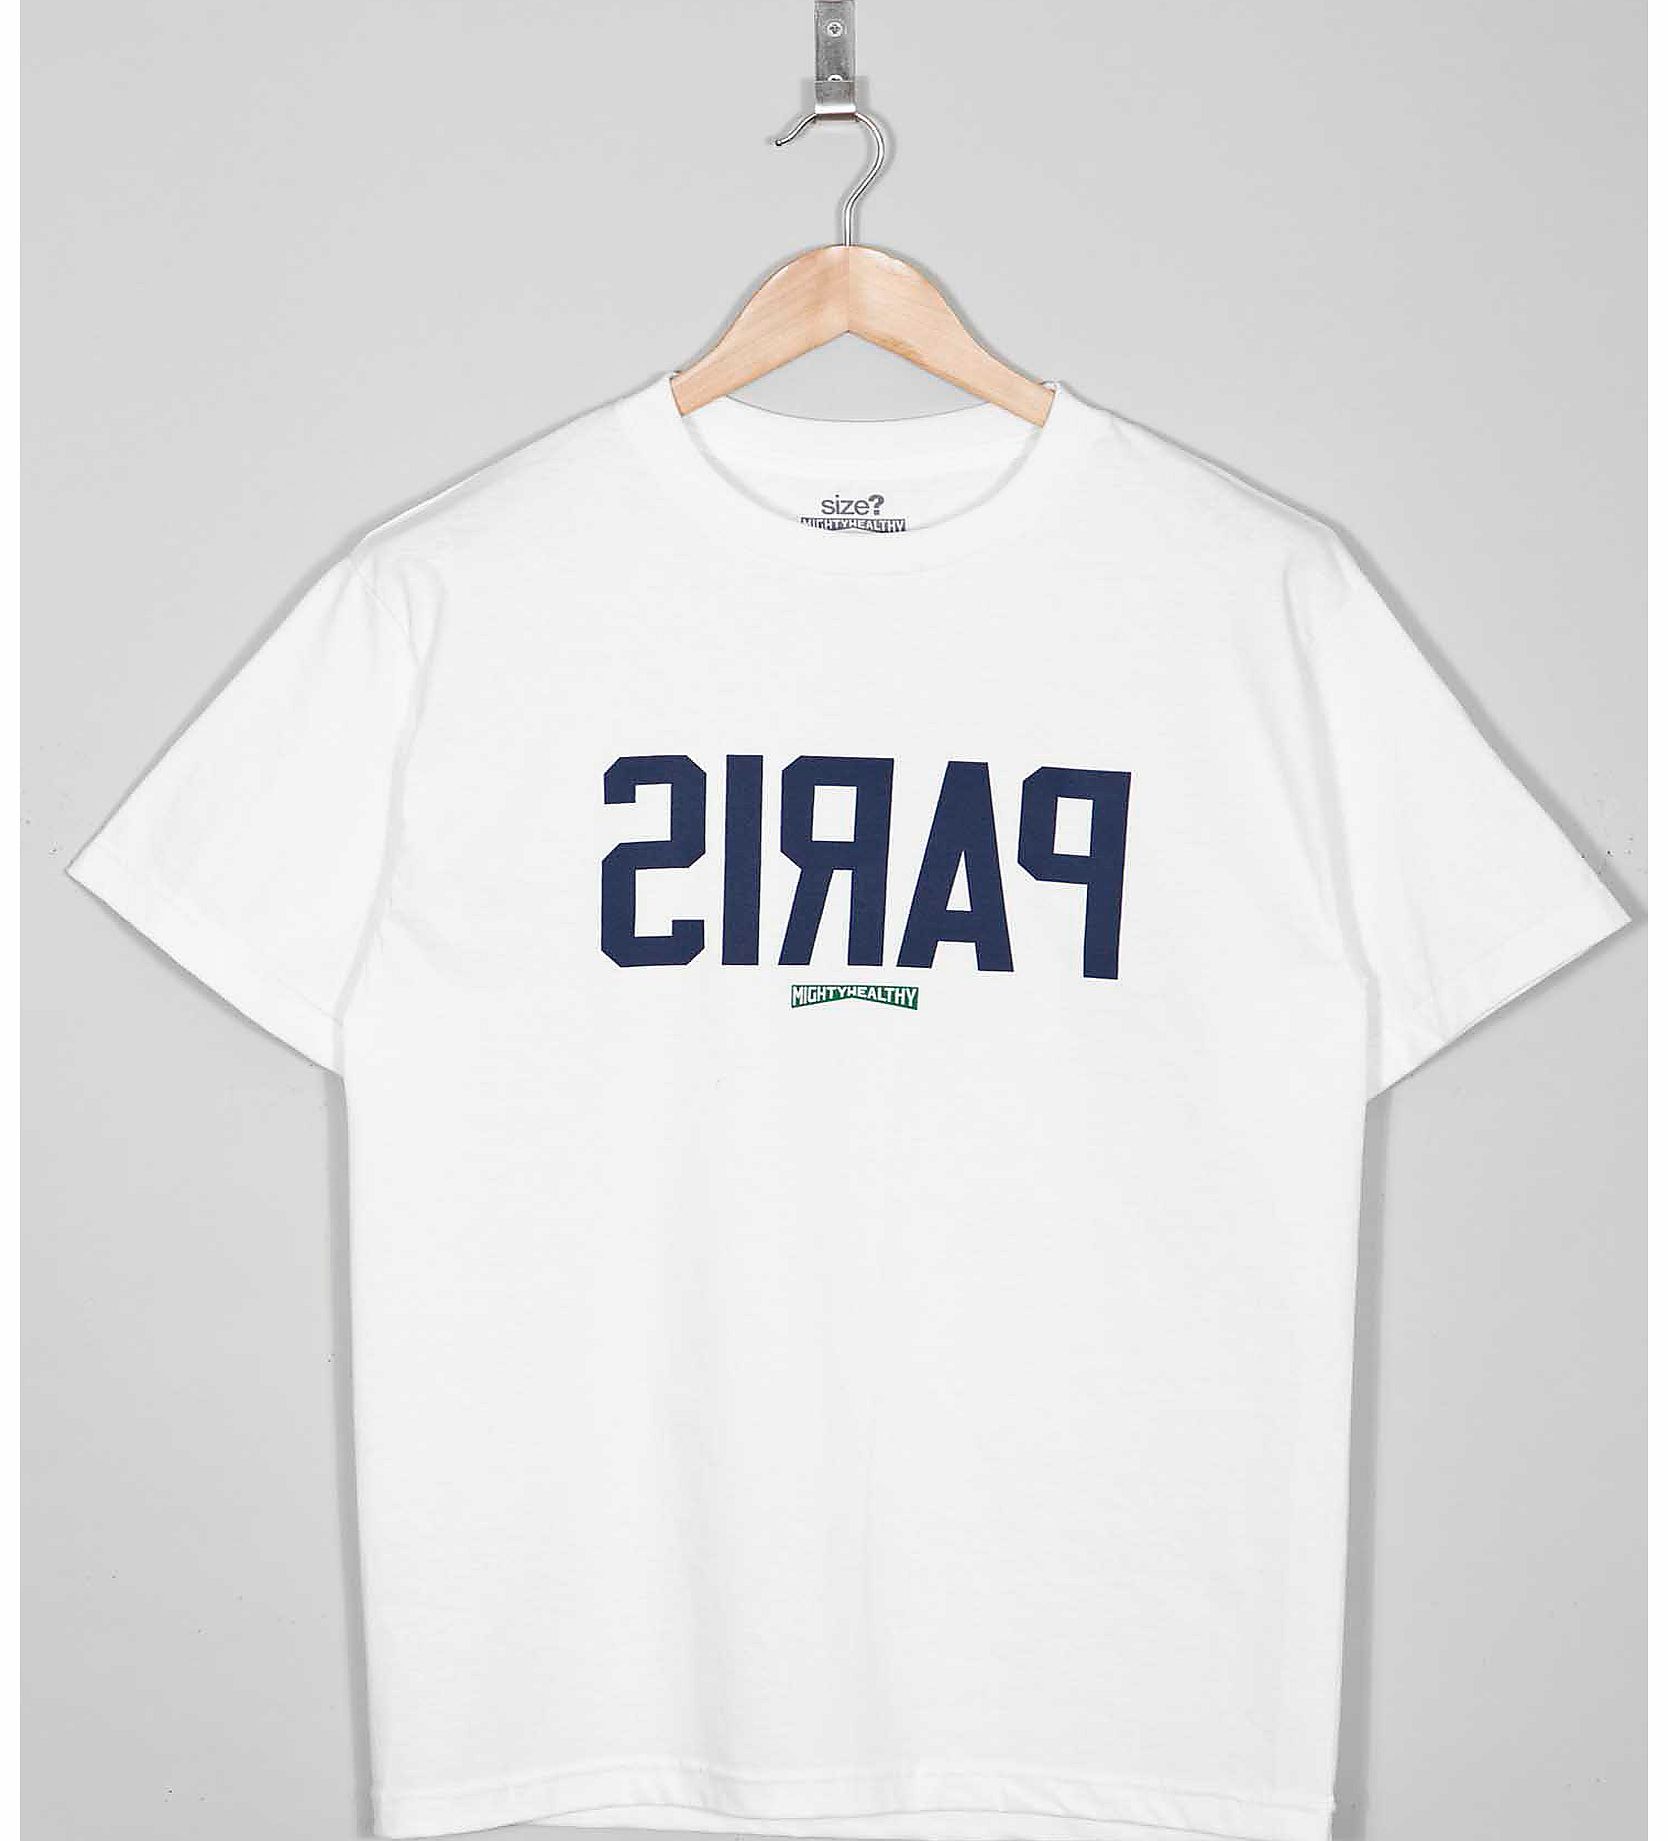 x size? Paris T-Shirt